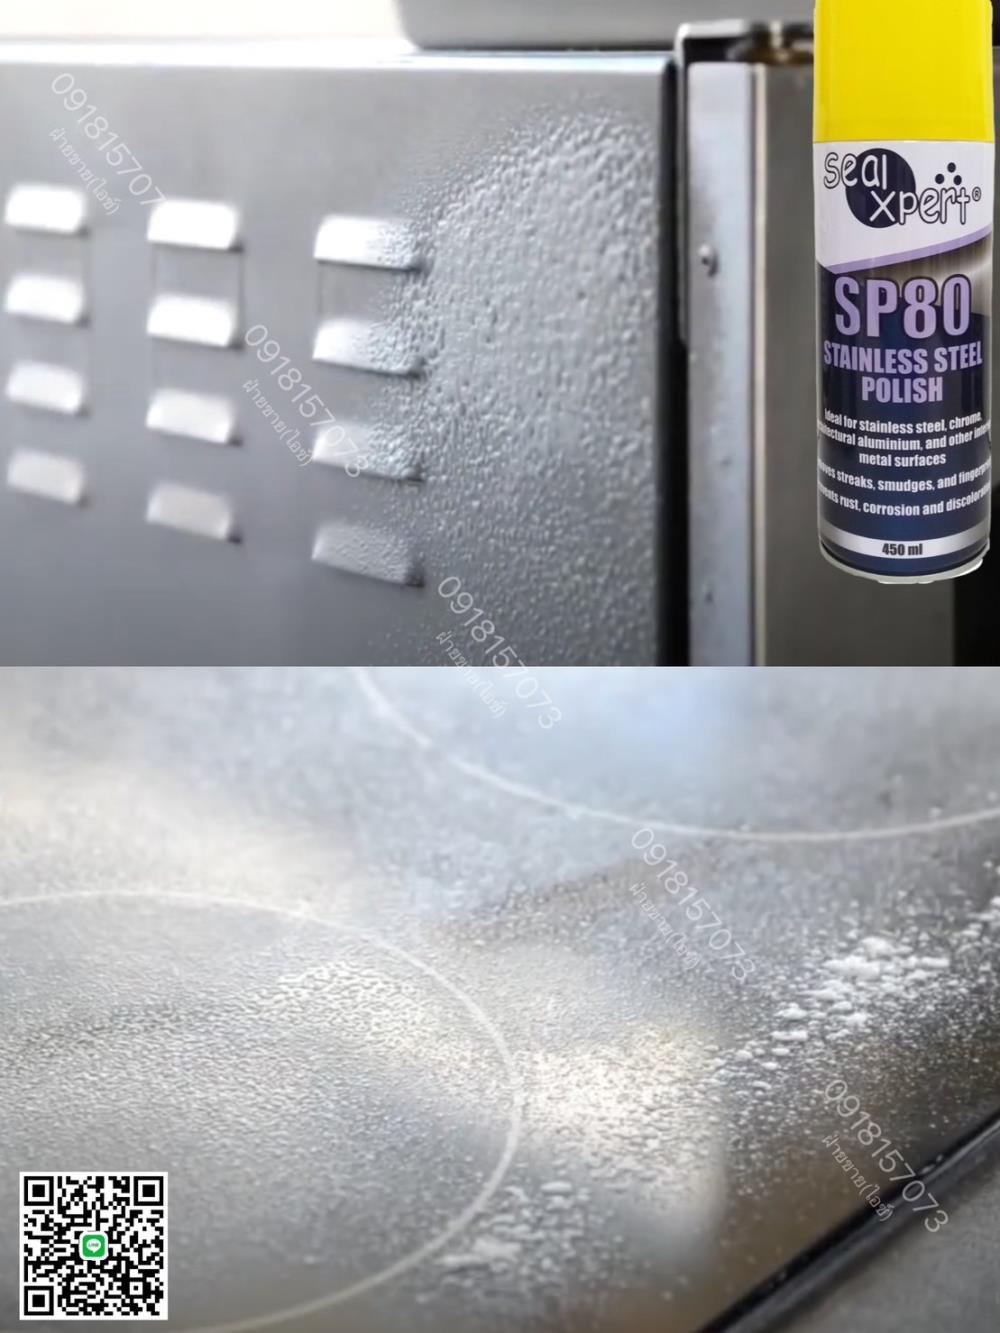 SP80 Stainless Steel Cleaner & Polish 450ml สเปร์ยบำรุงรักษาสแตนเลส สเปรย์ทำความสะอาด ขัดผิวเงา ขจัดรอยเปื้อนให้เงางาม ป้องกันการกัดกร่อน-ติดต่อฝ่ายขาย(ไอซ์)0918157073ค่ะ